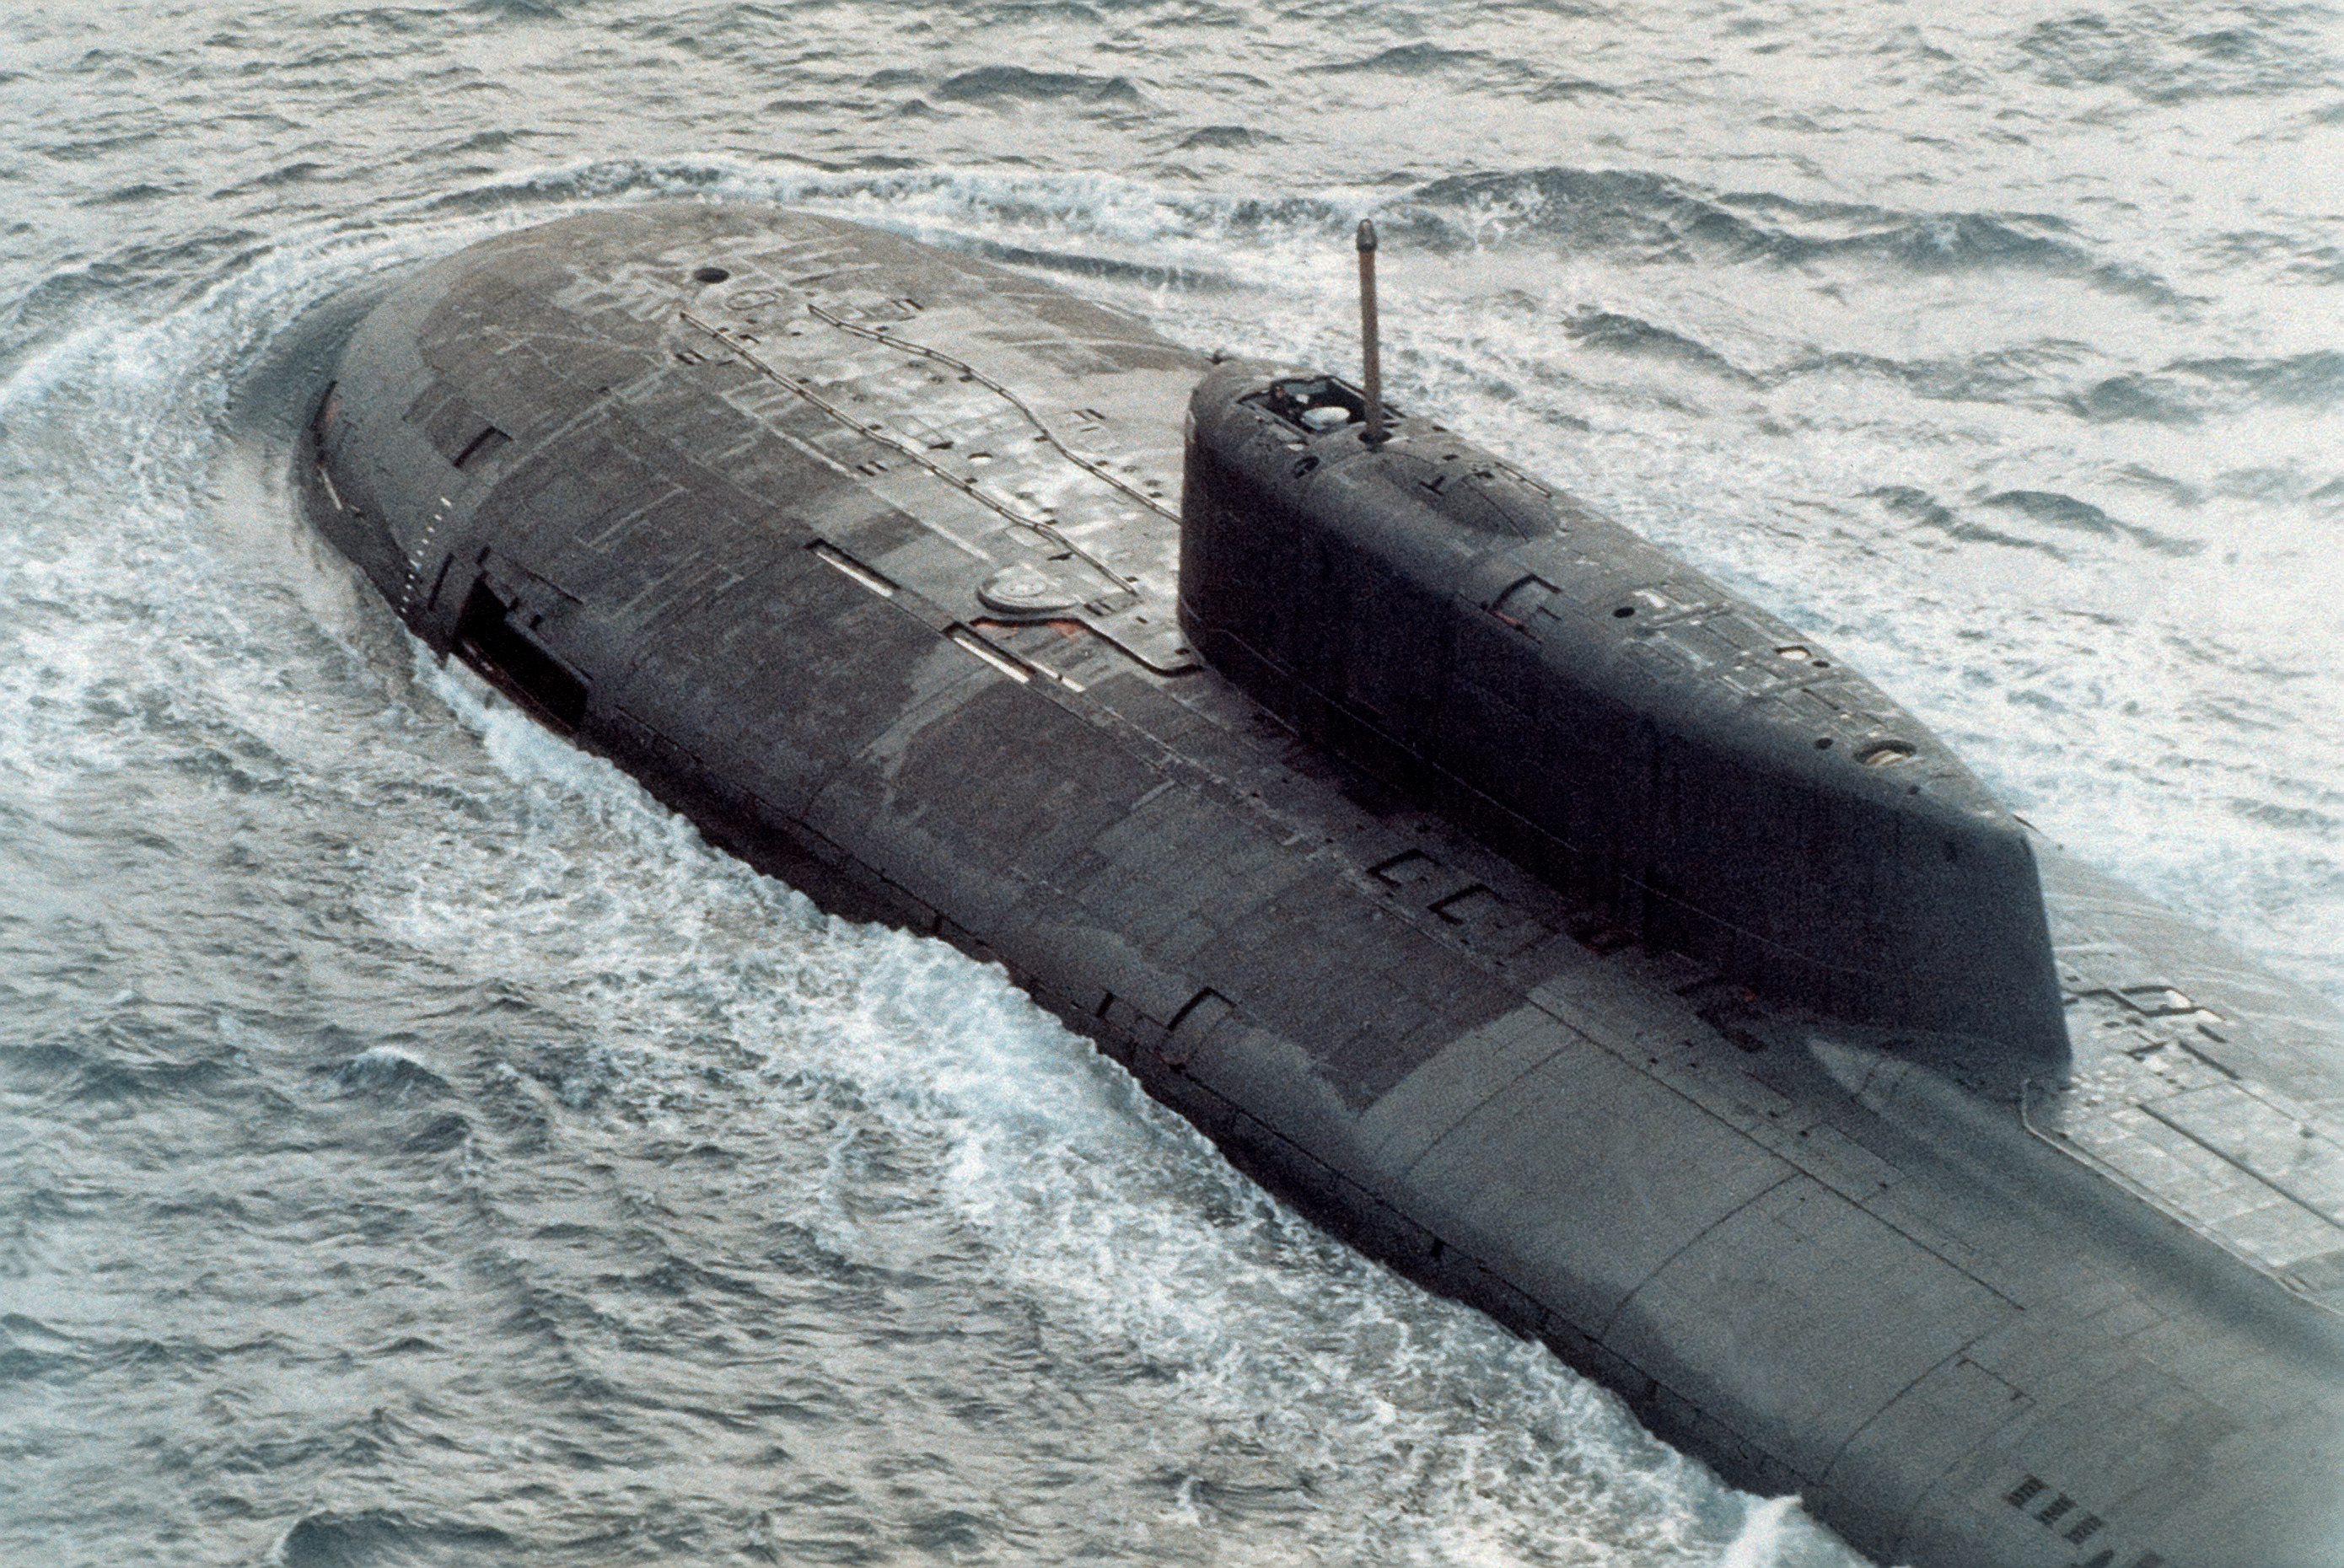 冰下潜艇大战_中国 宋级潜艇被元级潜艇取代_中国下一代战略核潜艇